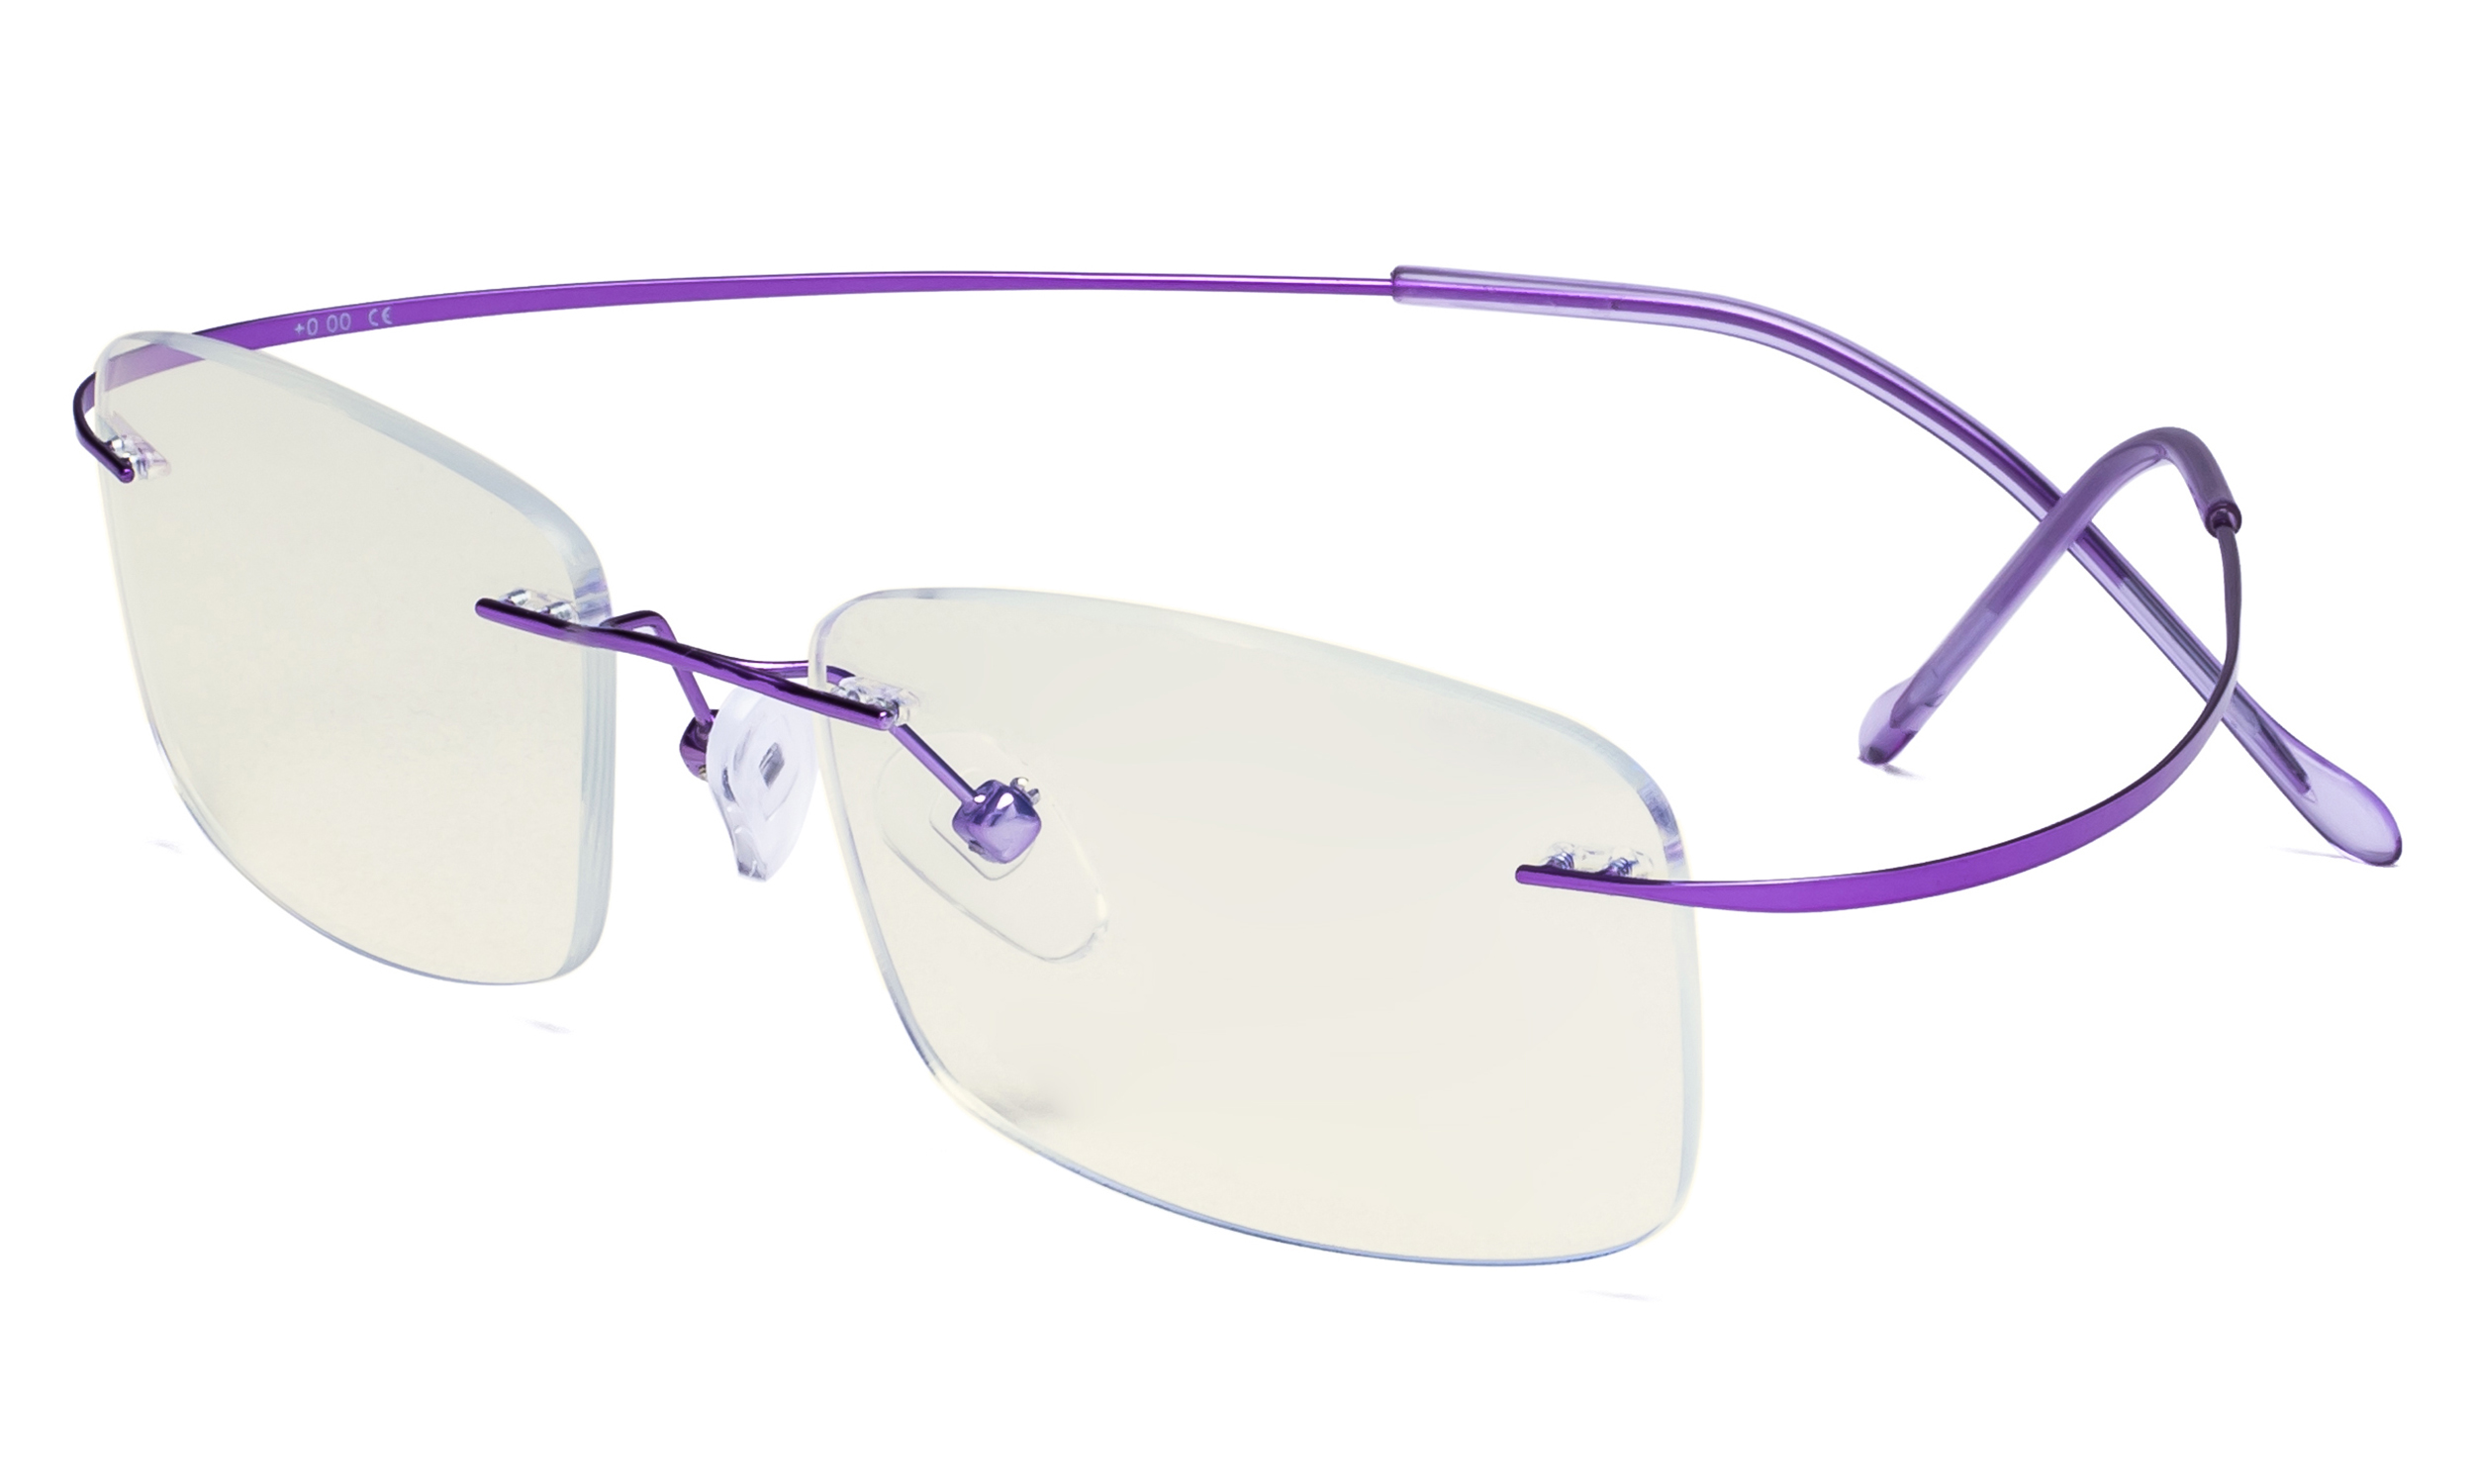 Titanium Computer Glasses Reading Eyeglasses Frameless Readers Blue Light Filter